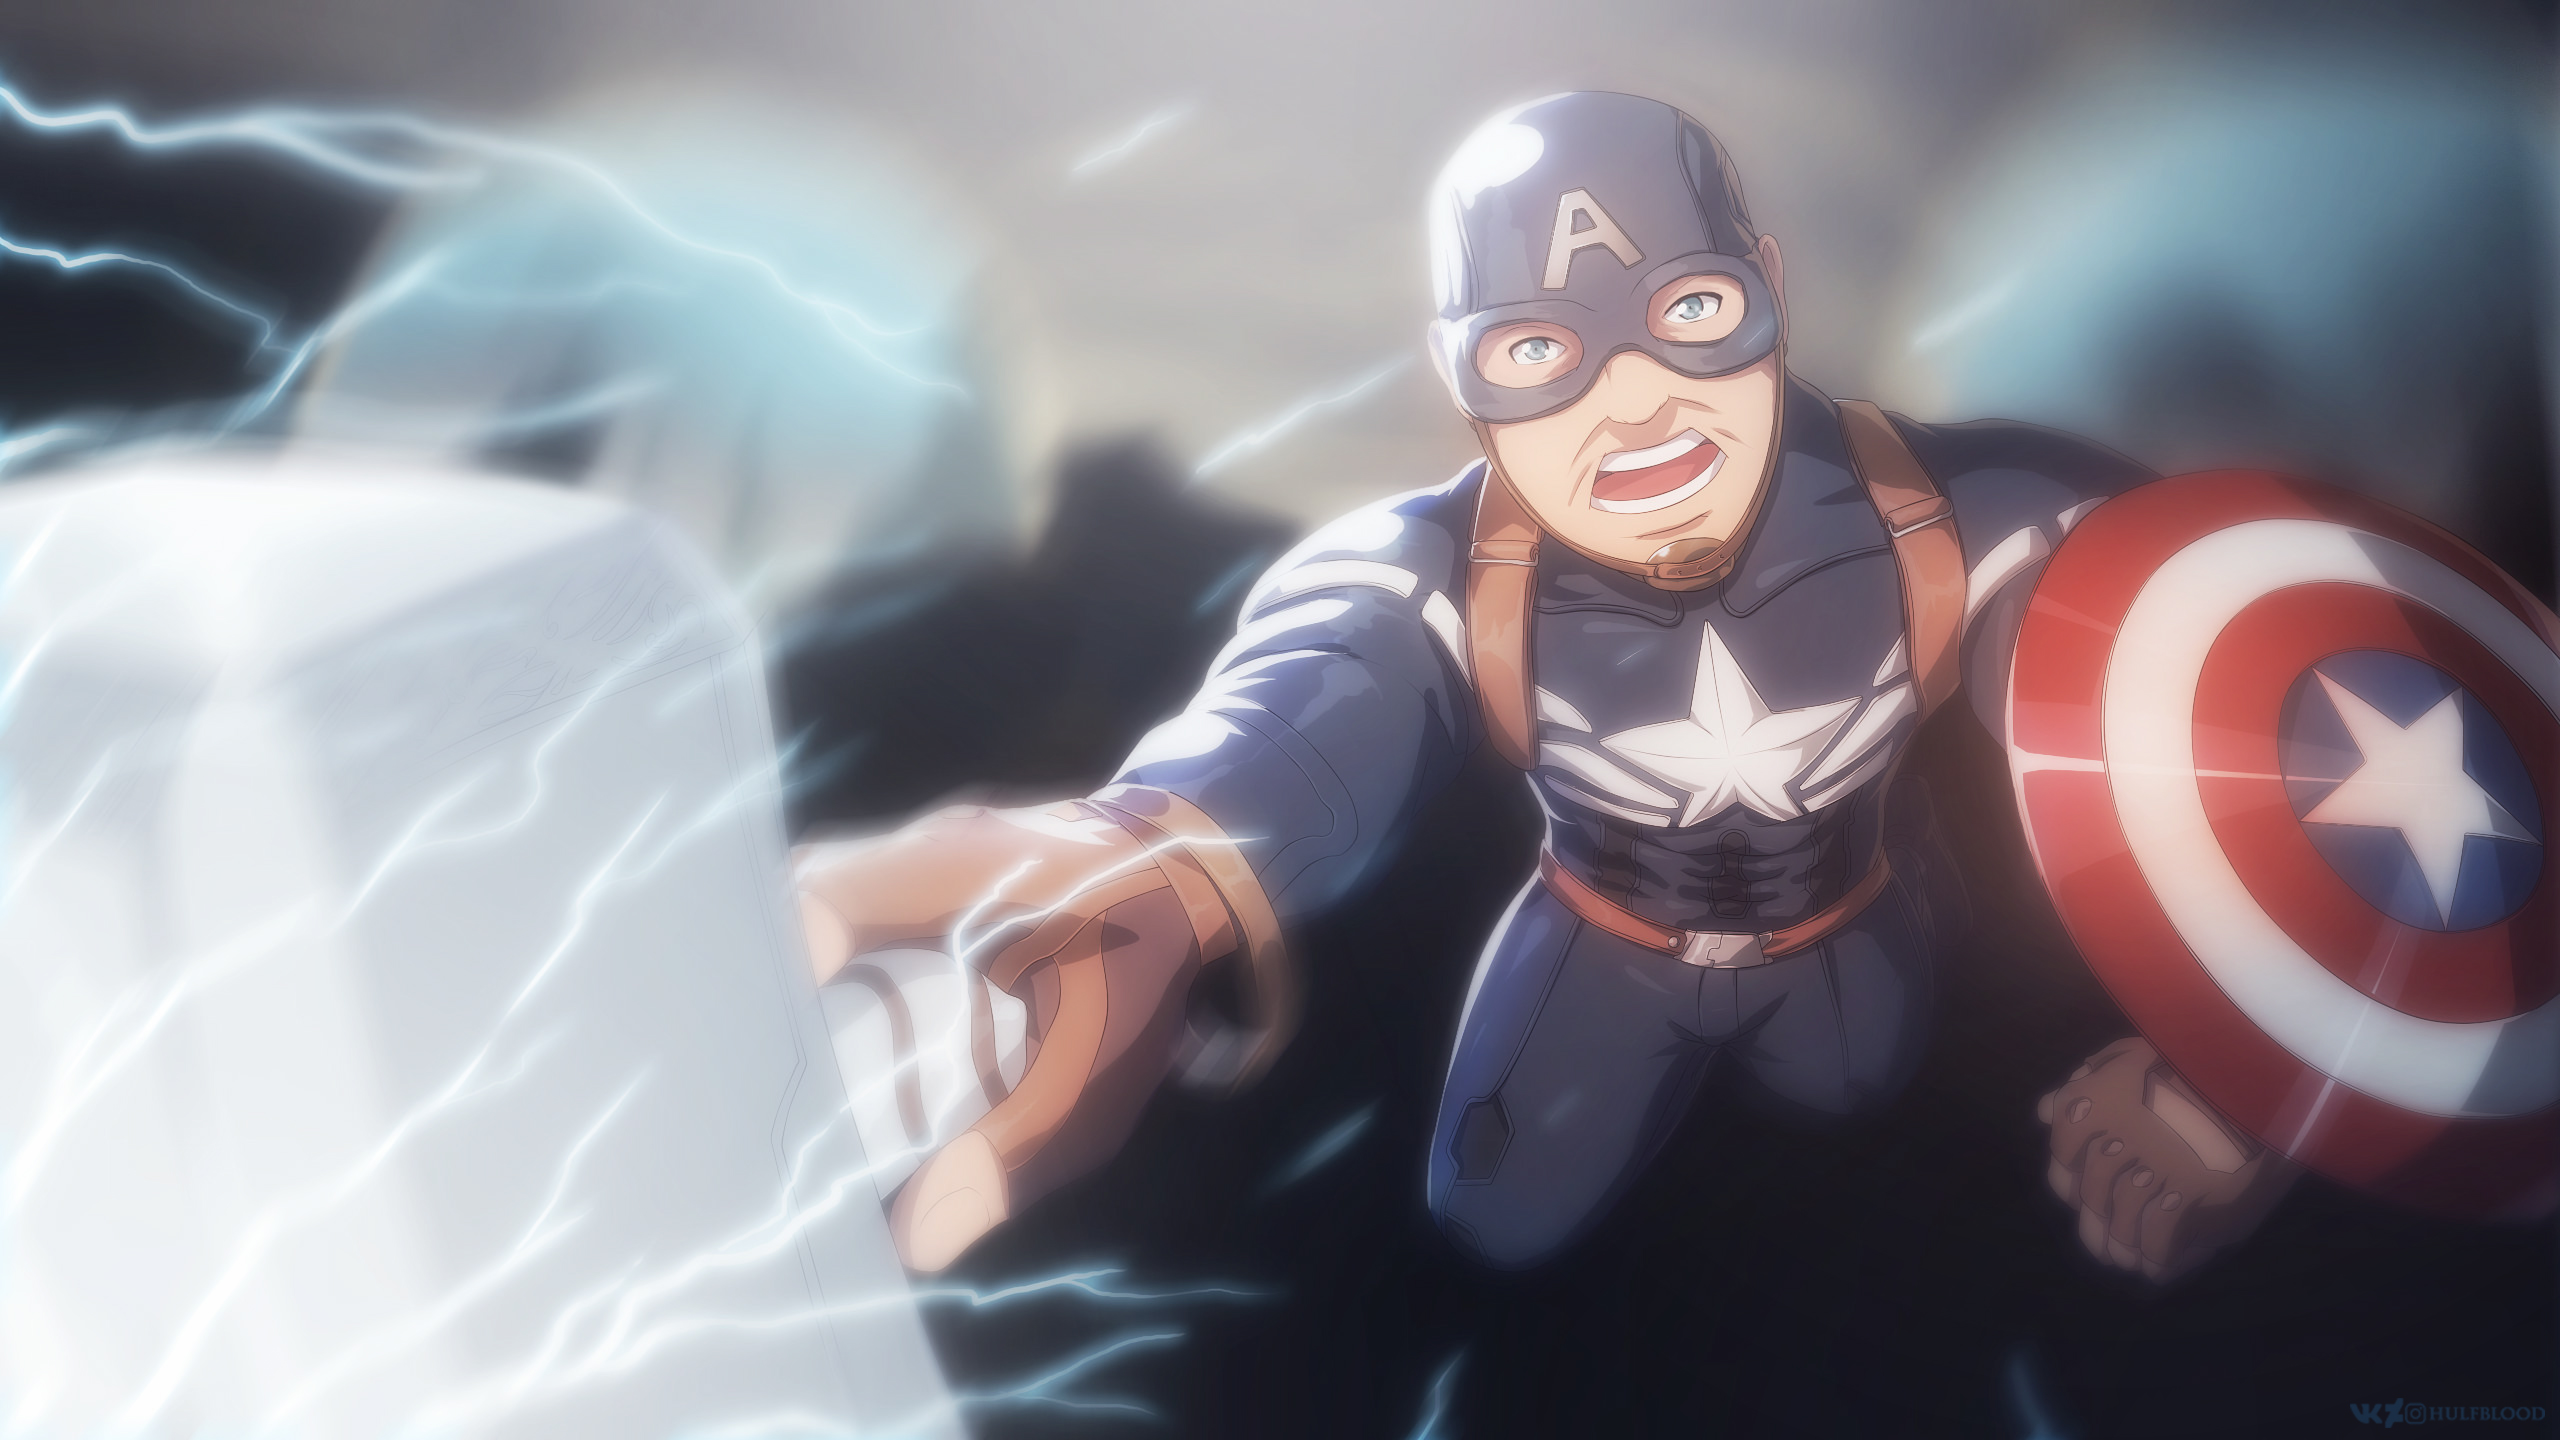 Скачать обои бесплатно Кино, Капитан Америка, Мстители, Мстители: Финал картинка на рабочий стол ПК